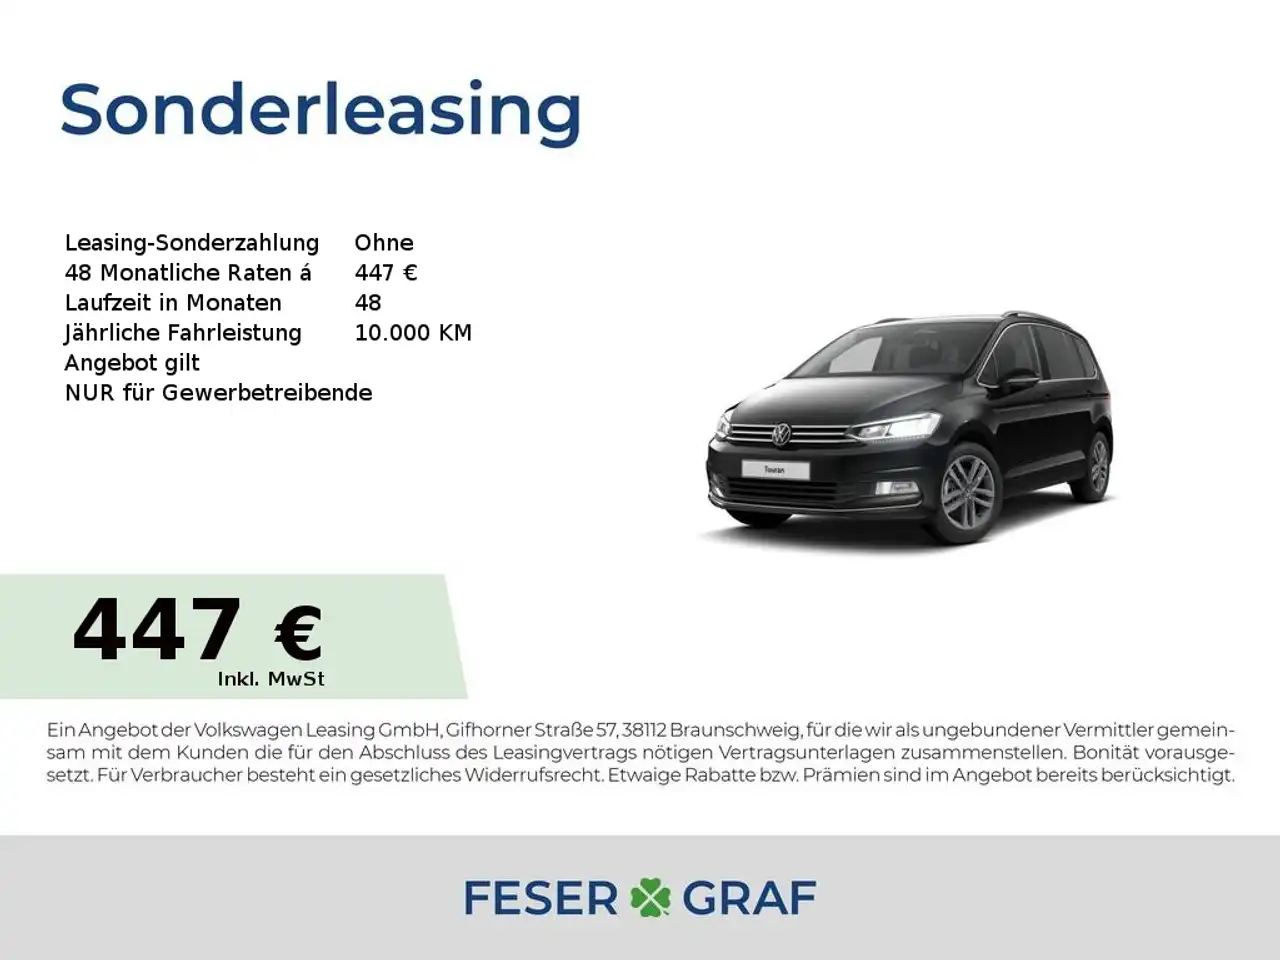 VW TOURAN Gebraucht, Diesel, Automatik, FzN: 26076 🍀 Feser-Graf  Fahrzeugsuche